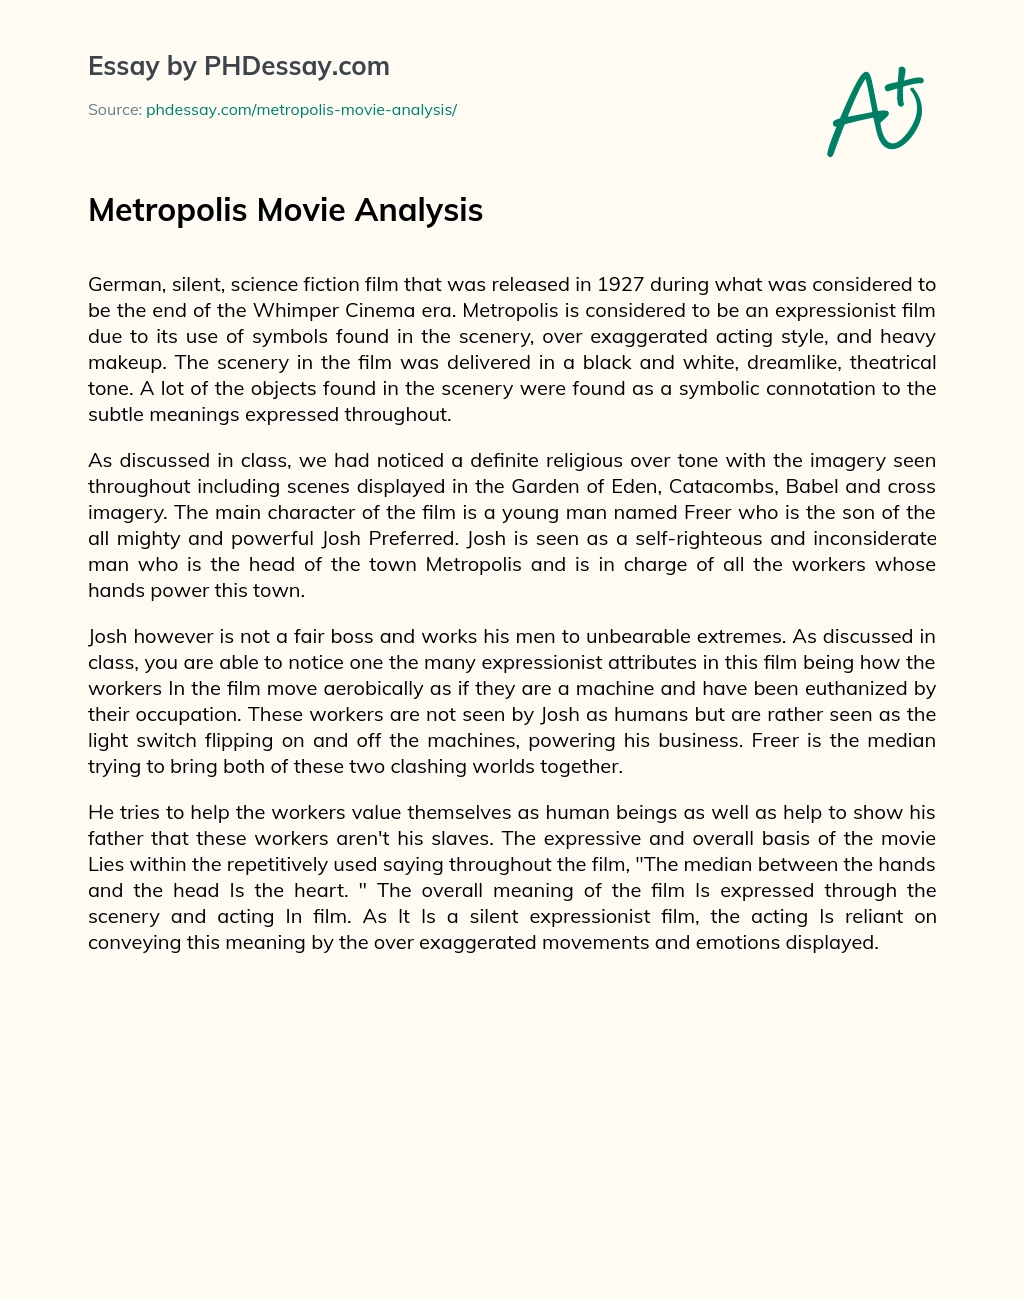 Metropolis Movie Analysis essay